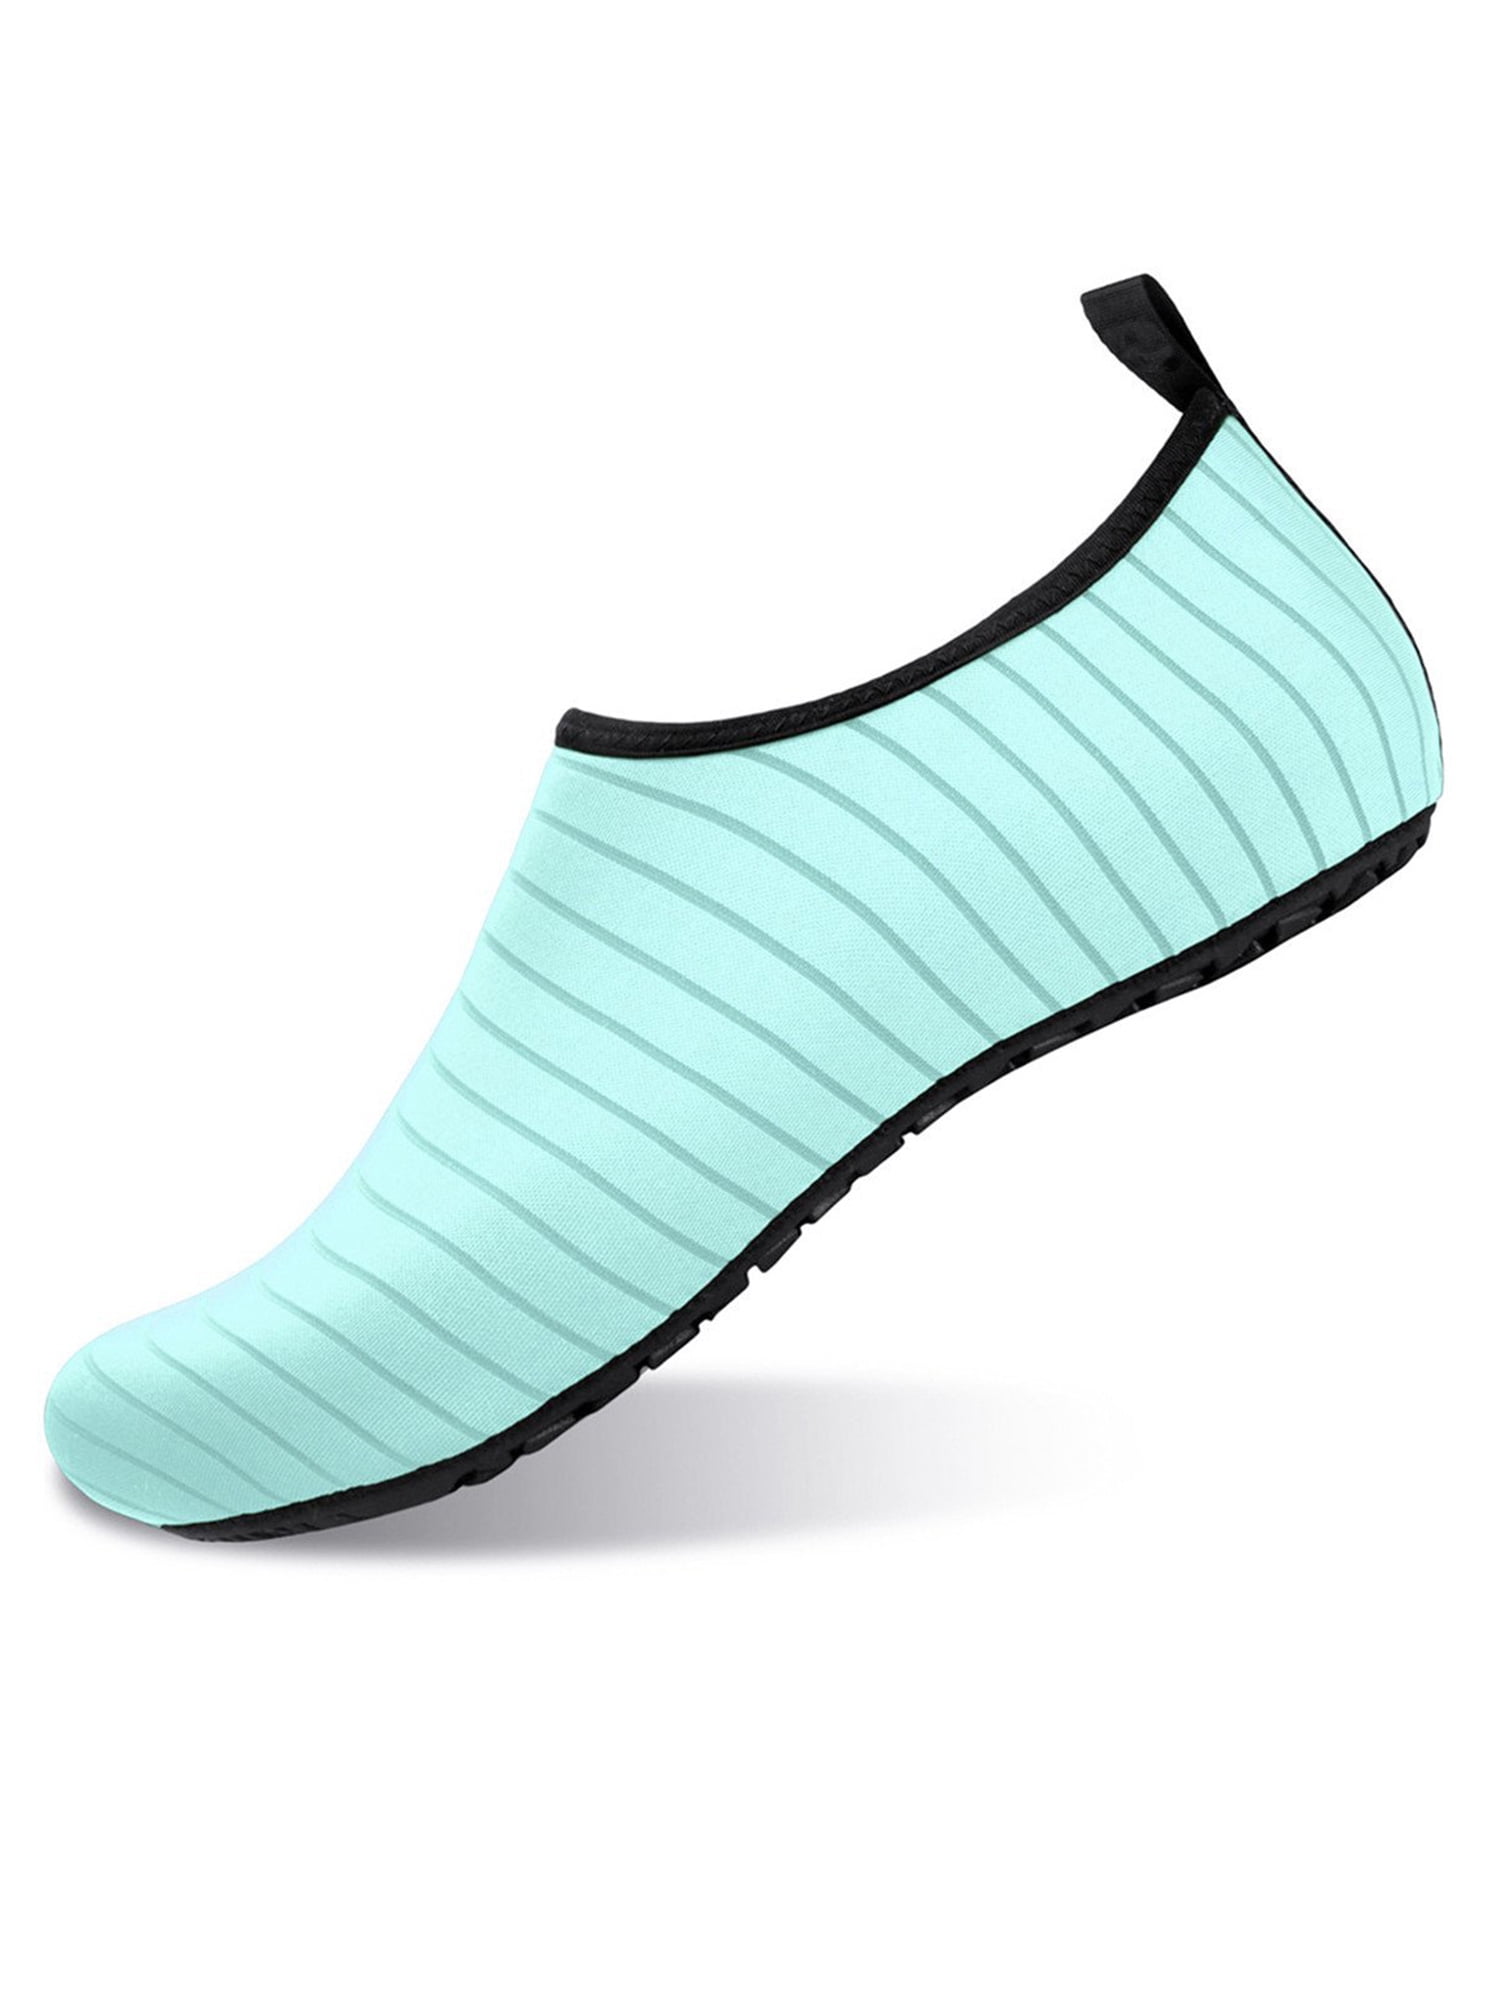 JIASUQI Athletic Hiking Water Shoes Barefoot Aqua Swim Sports Sandals Walking Shoes for Women Men 